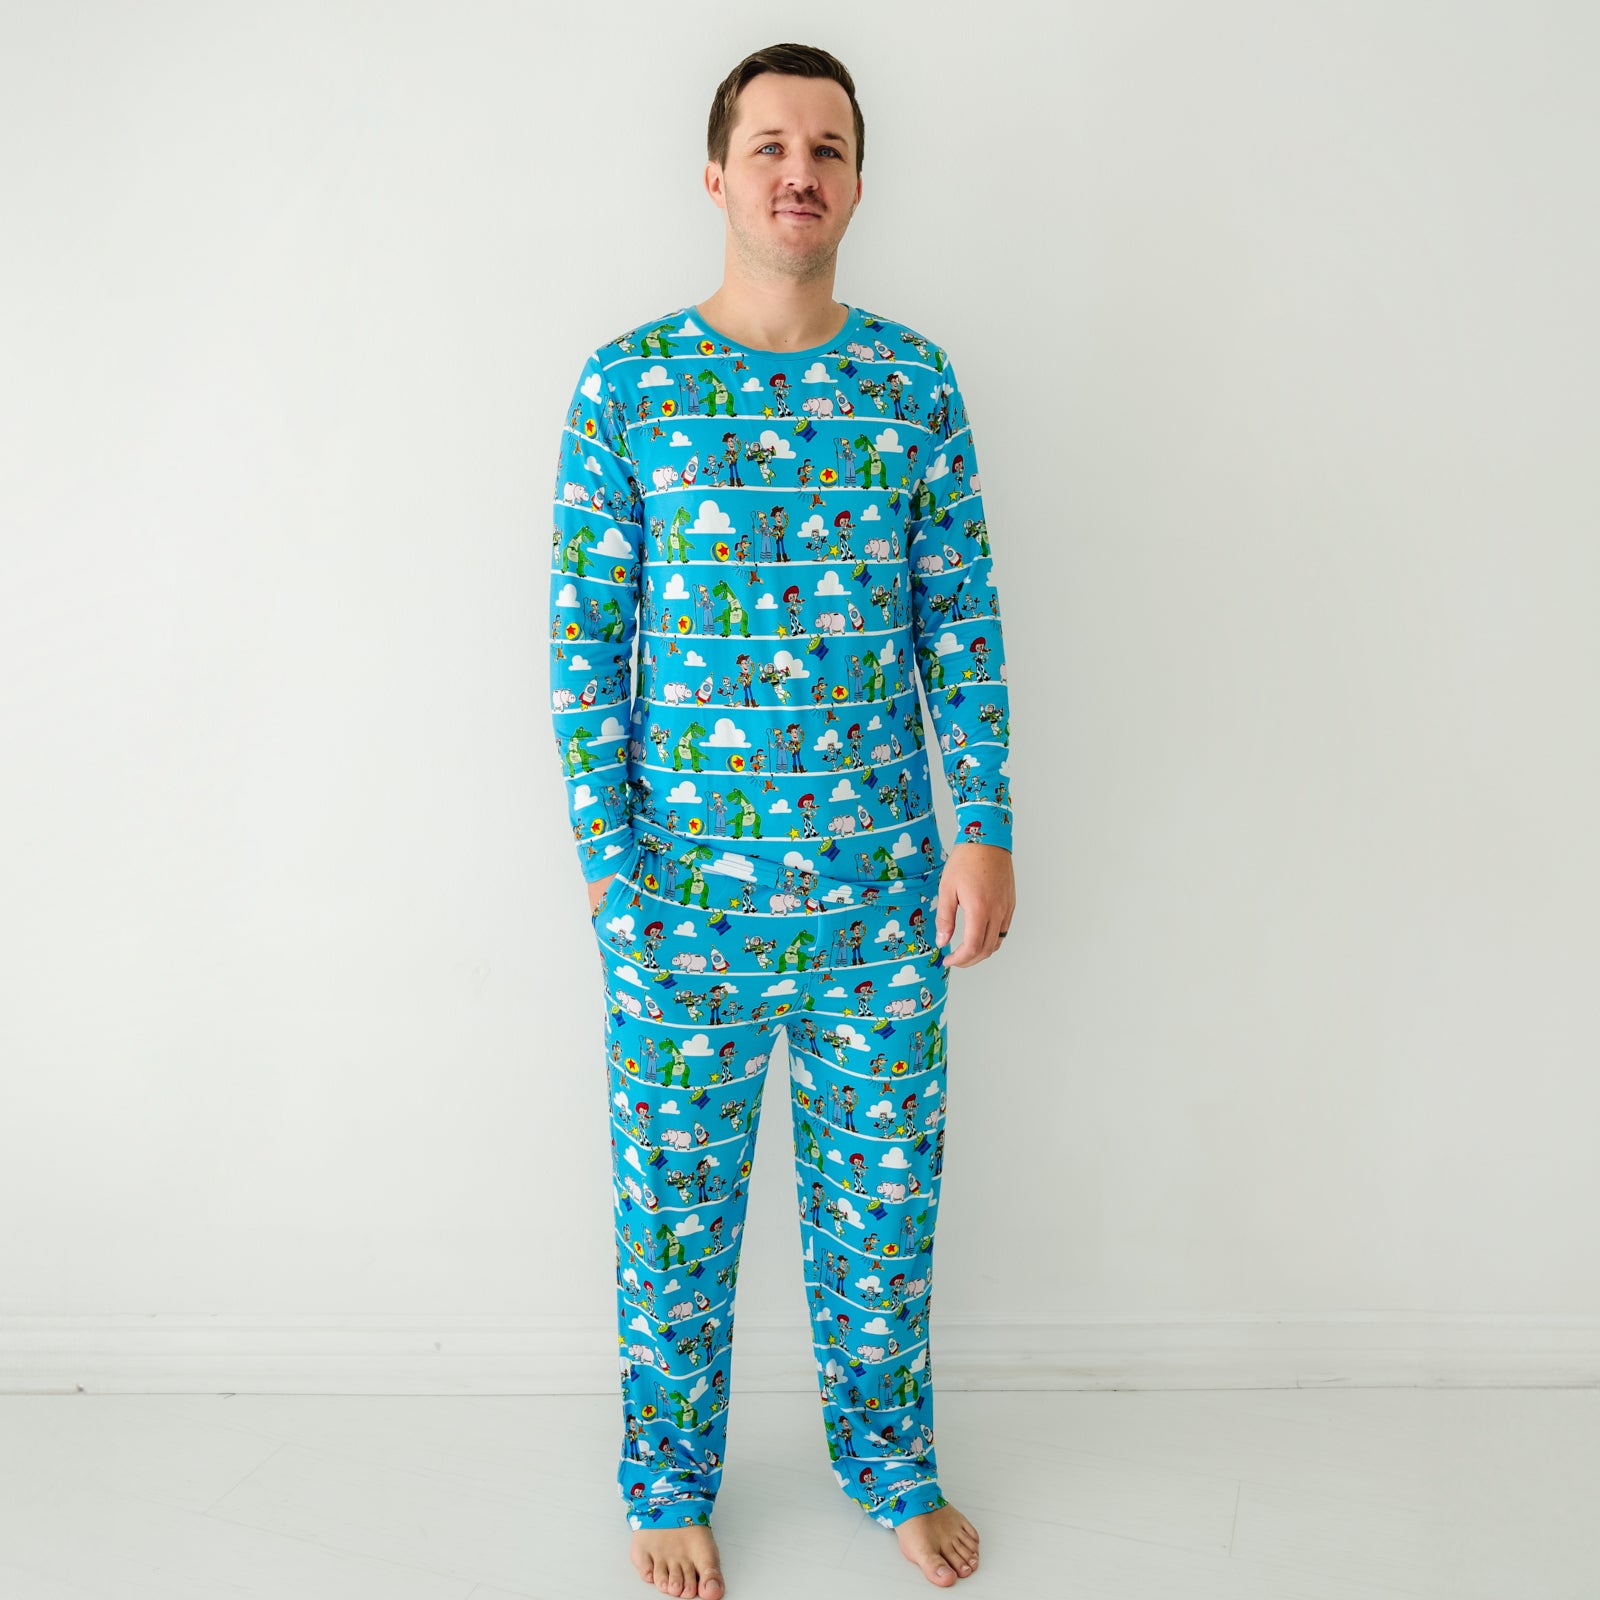 Man wearing a Disney Pixar Toy Story Pals men's pajama top and matching pajama pants